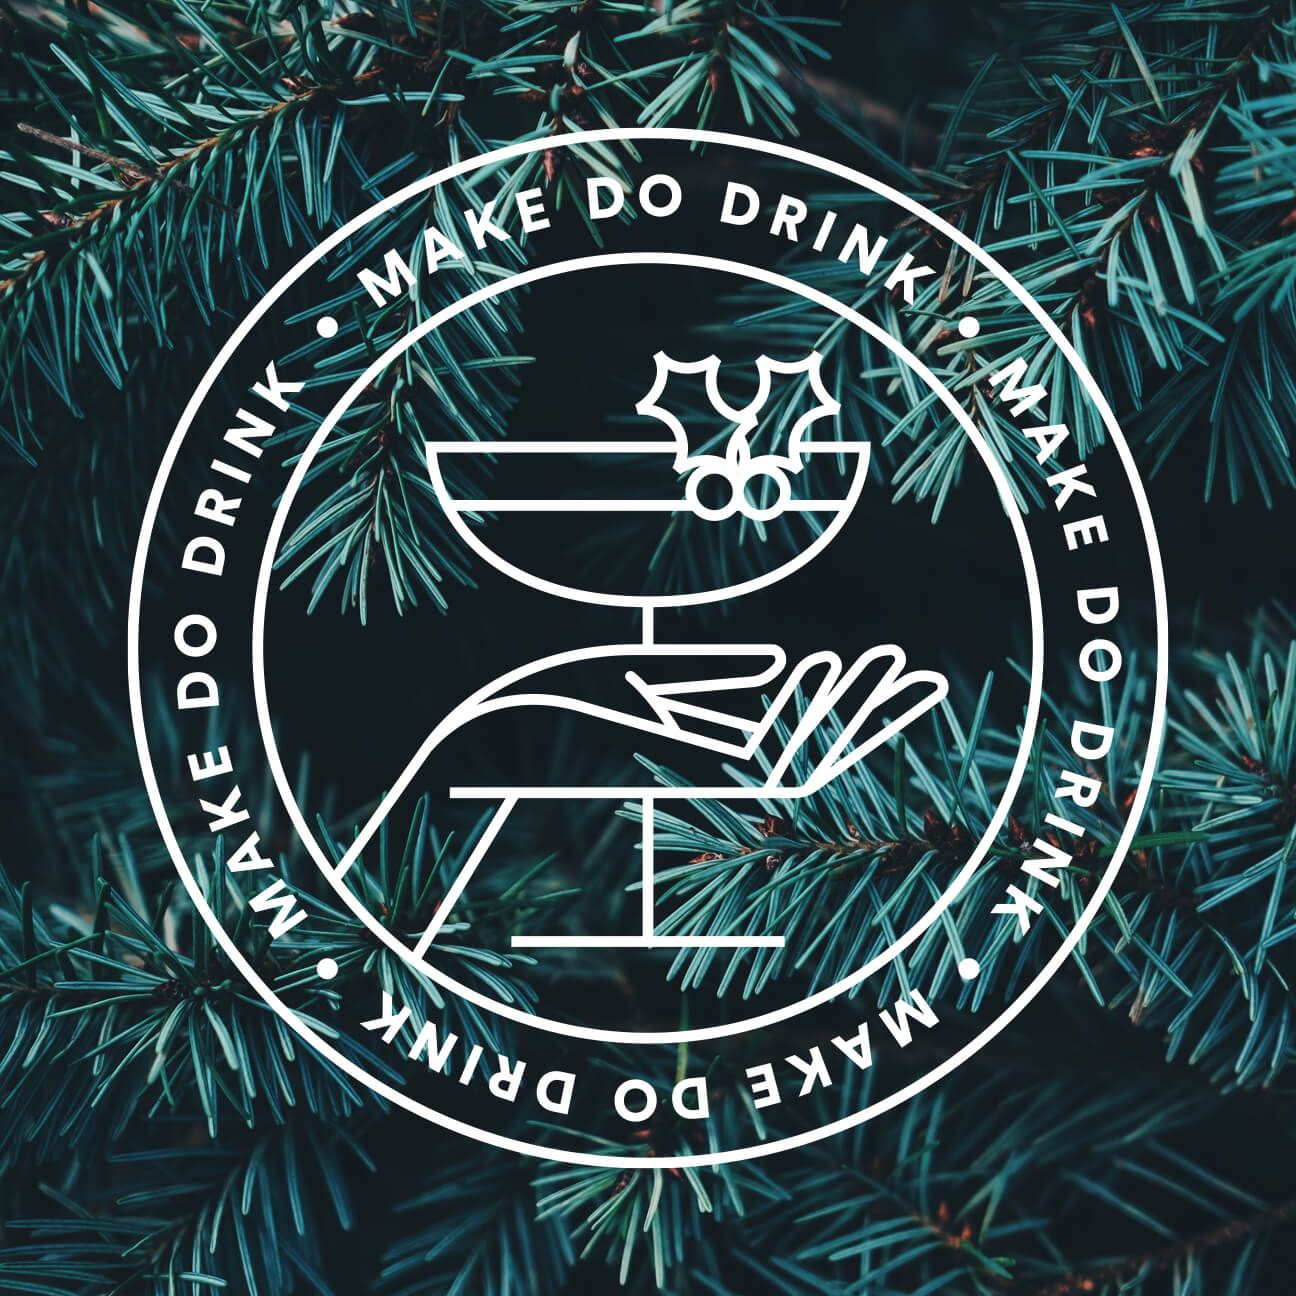 Make Do Drink; Wreath #2